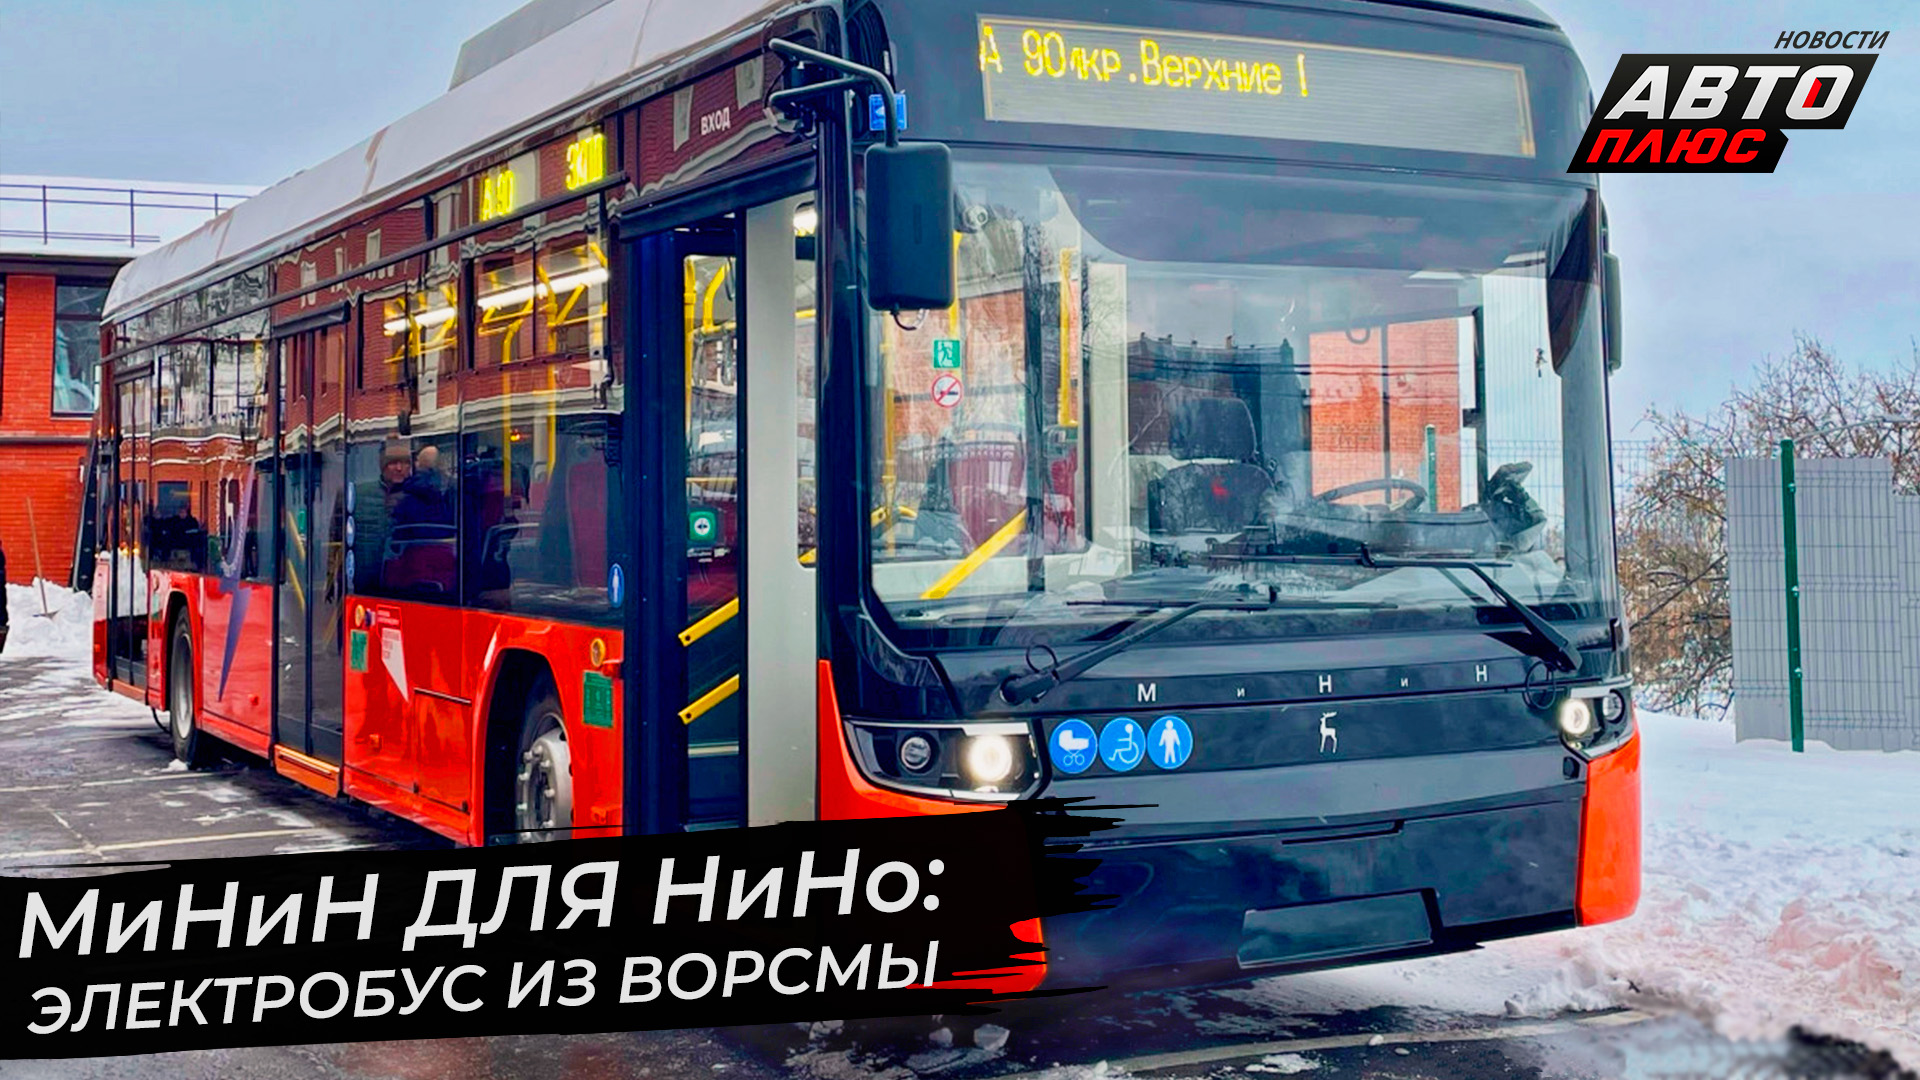 Санкт-Петербург и Нижний Новгород закупят электробусы круче московских | Новости с колёс №2742